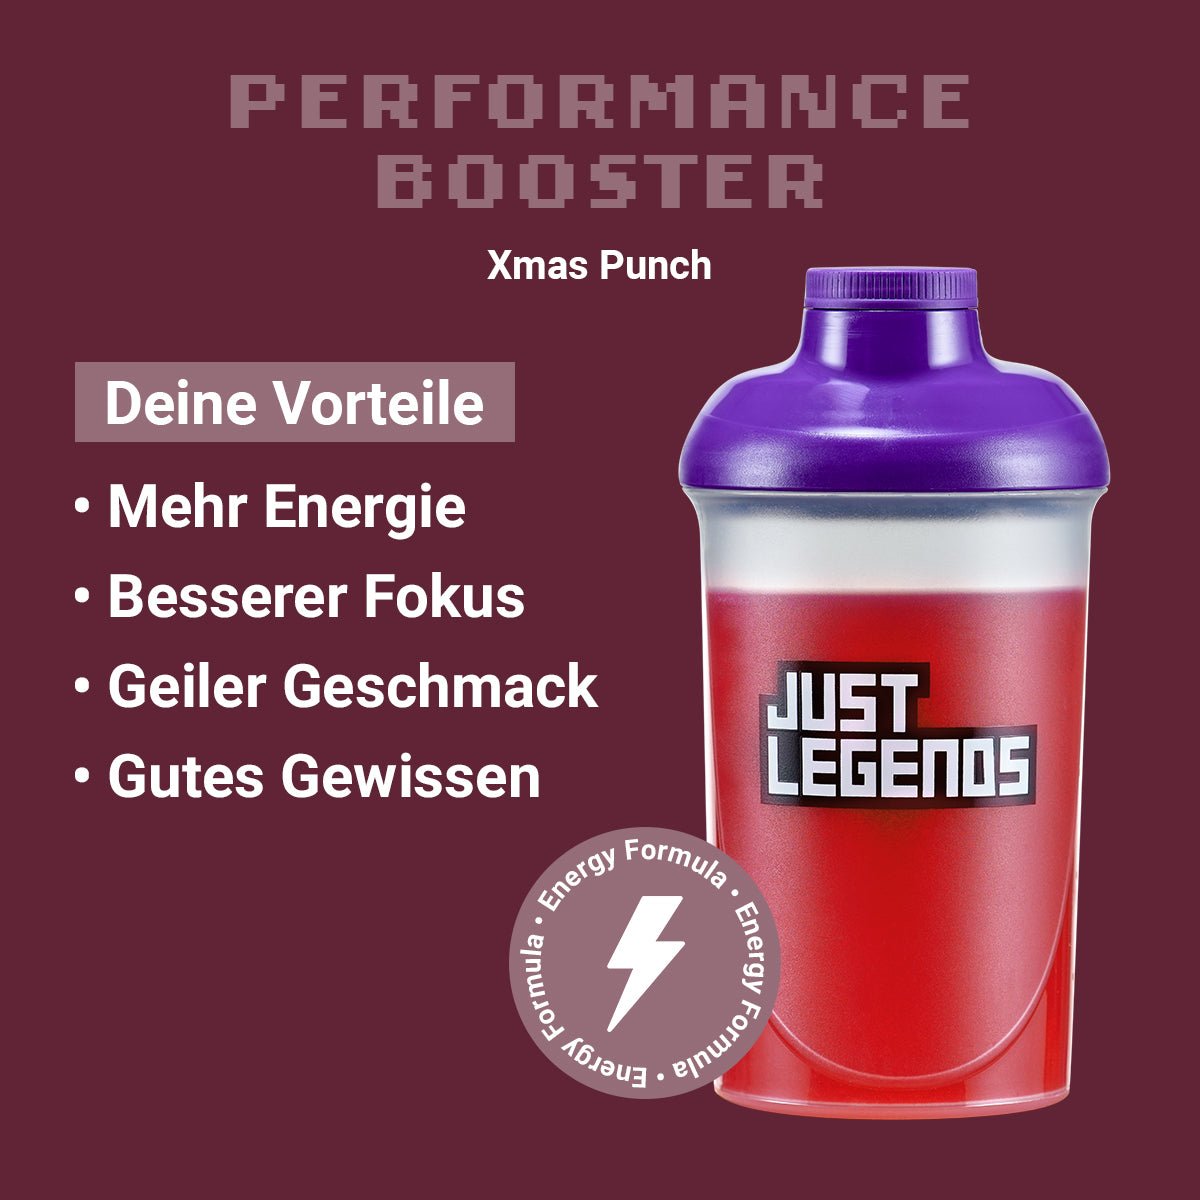 Just Legends Performance Booster Xmas Punch | Funktionaler, veganer Performance Booster auf Pulverbasis ohne Zucker, mit wenig Kalorien, vielen Vitaminen und natürlichen Aromen.